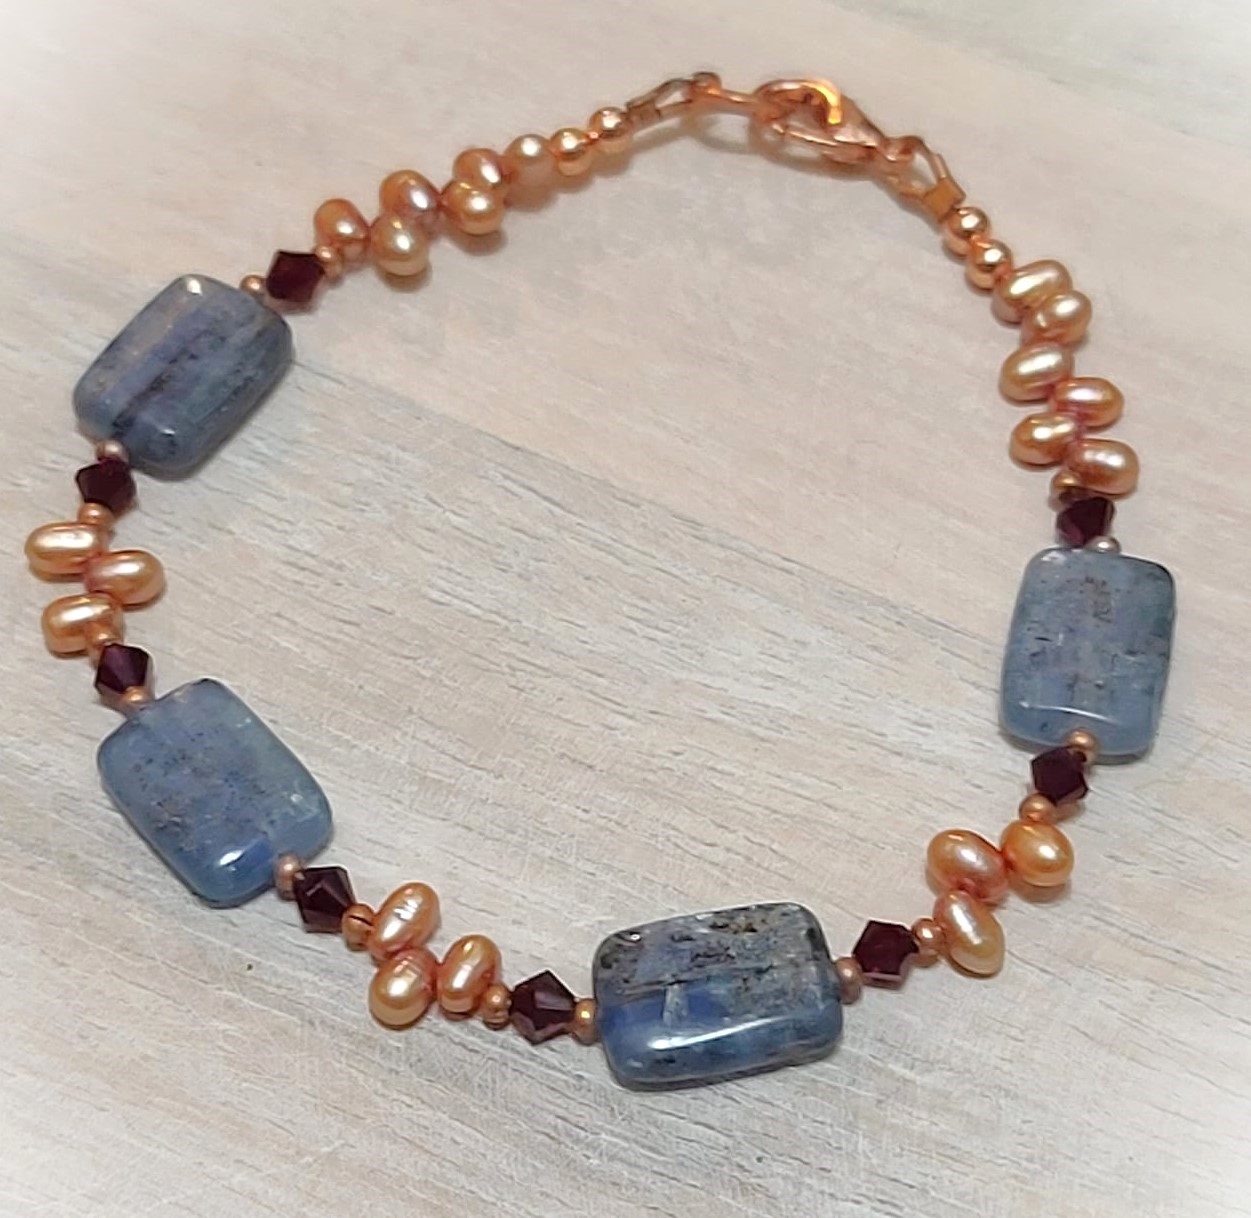 Gemstone bracelet, kyanite mineral, freshwater pearls & crystal